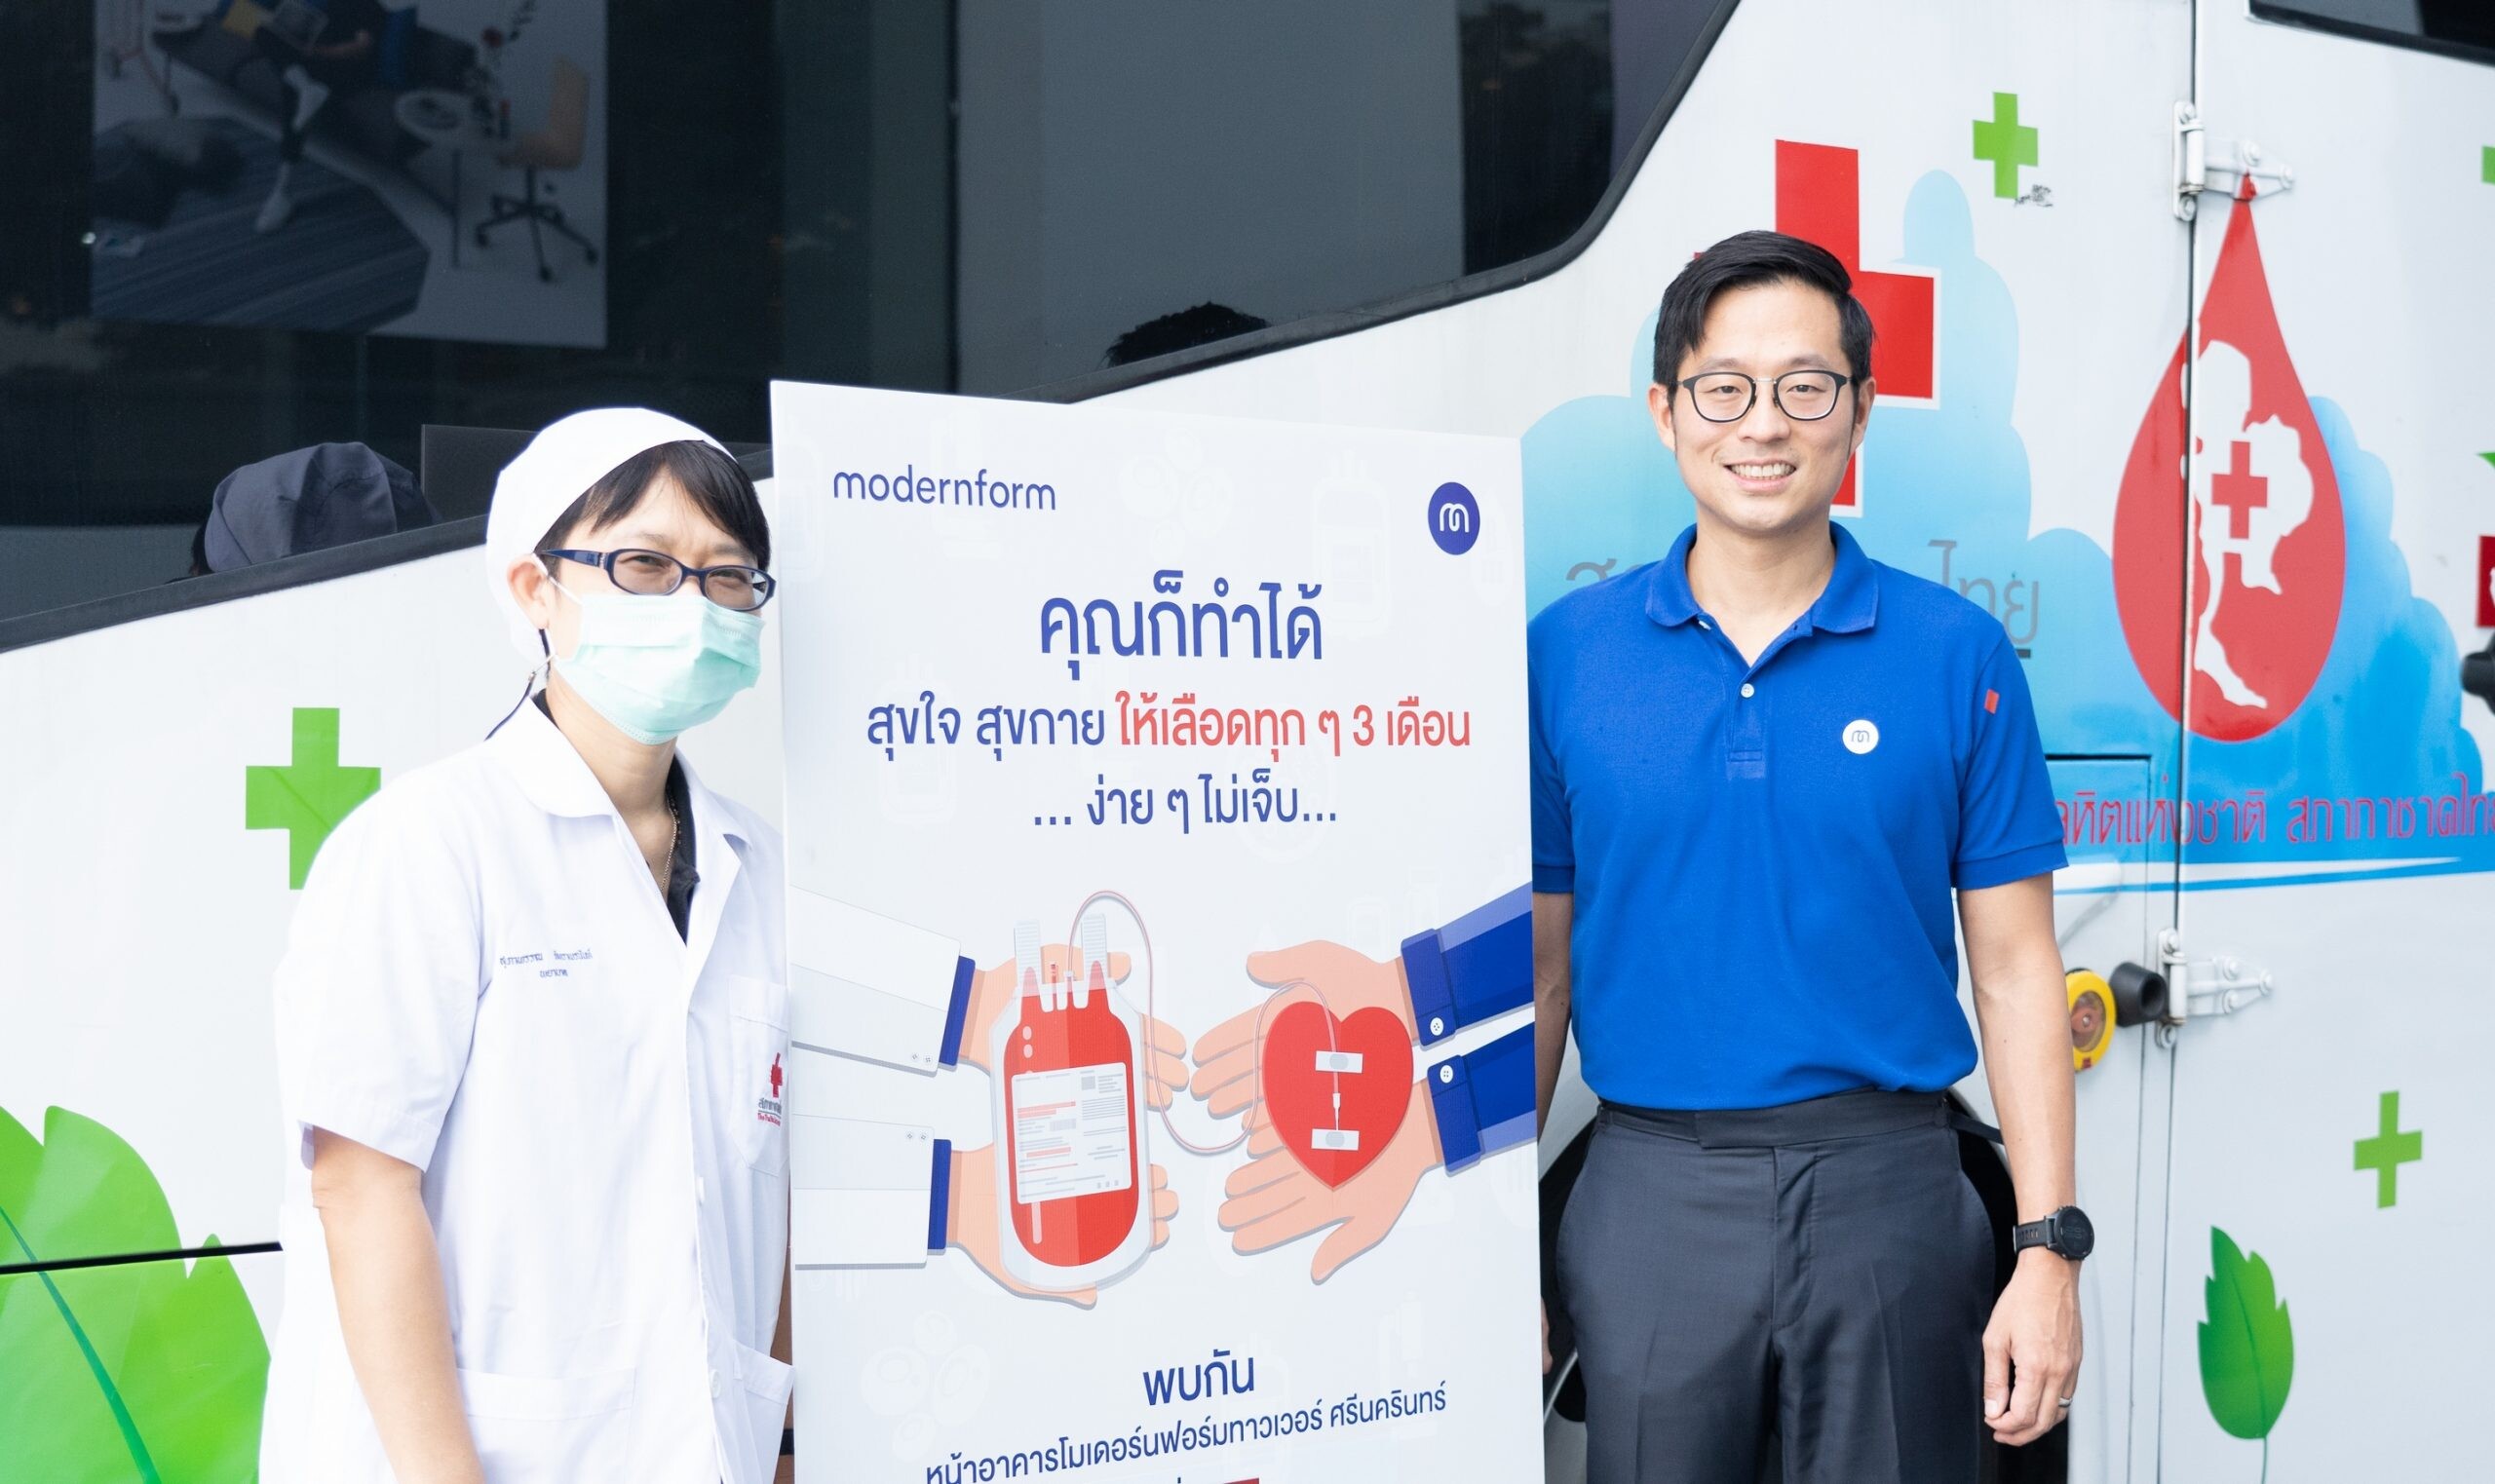 โมเดอร์นฟอร์มจัดกิจกรรม "ปันฝันปันรัก Blood Donation 2020" บริจาคโลหิตให้แก่สภากาชาดไทย